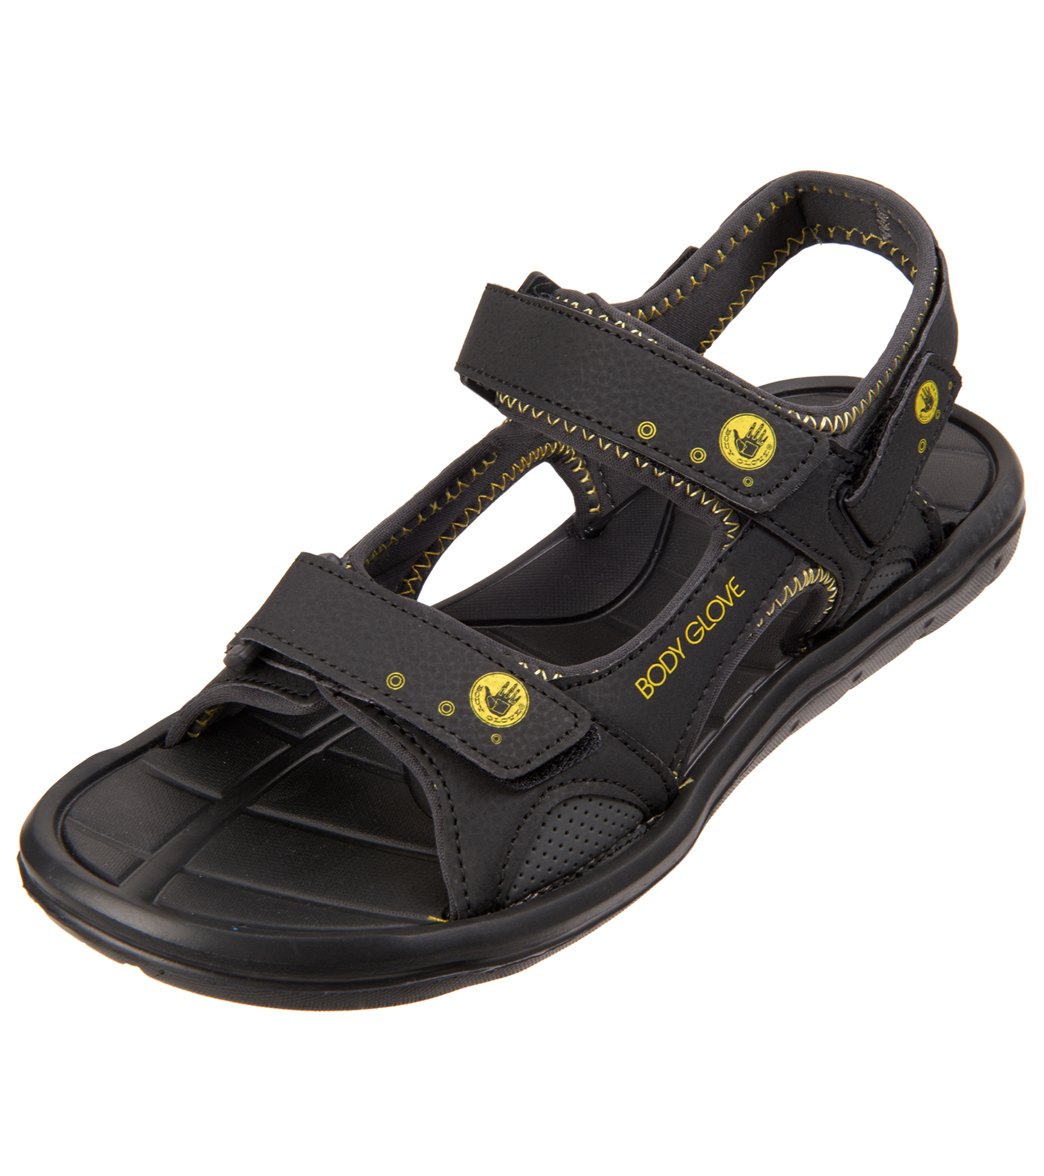 Body Glove Men's Trek Sandals - Black/Yellow 8 - Swimoutlet.com